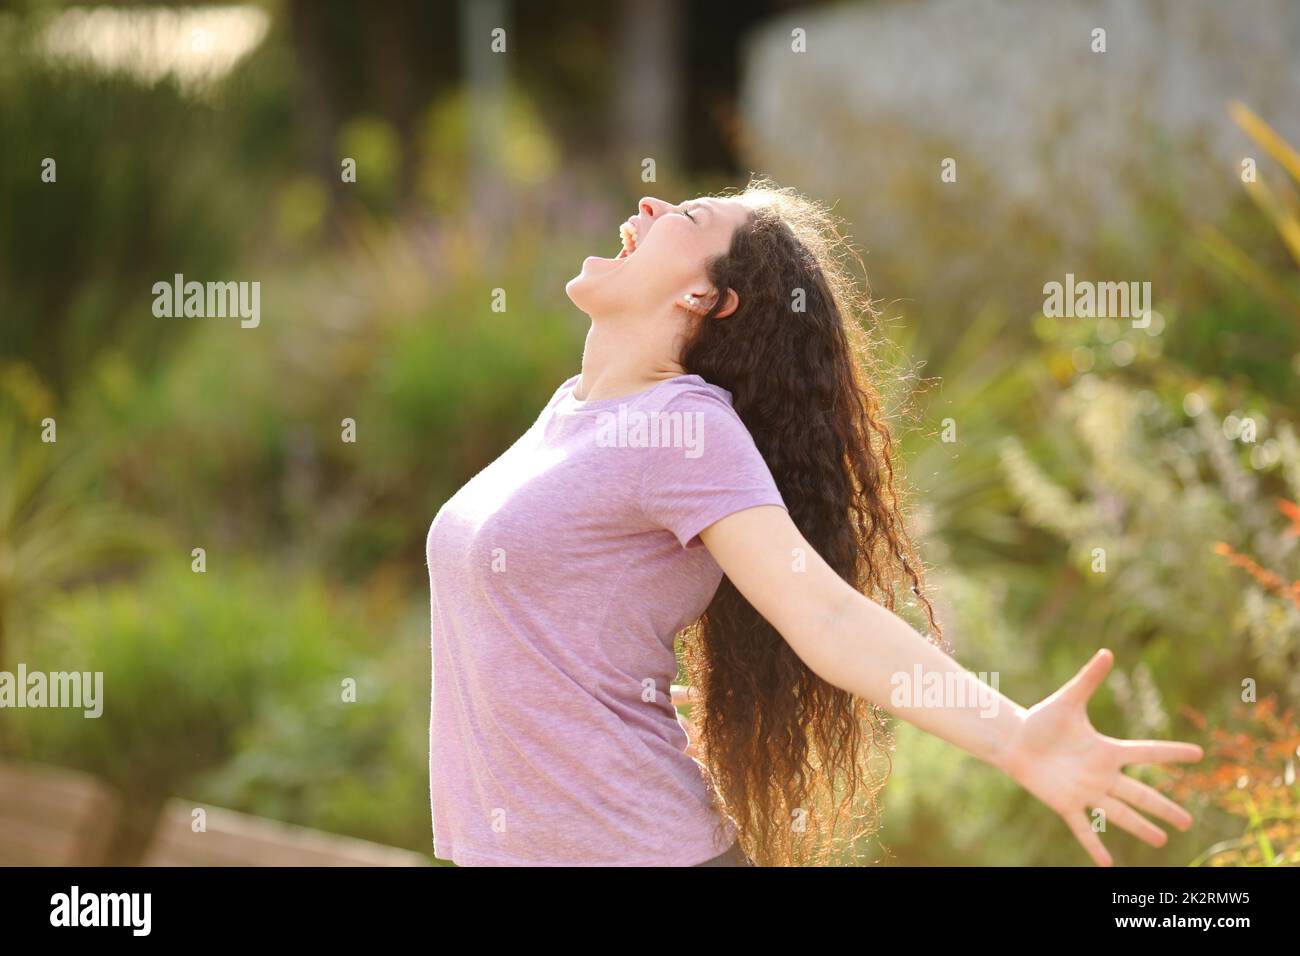 Une femme excitée s'étretant les bras et criant dans un parc Banque D'Images